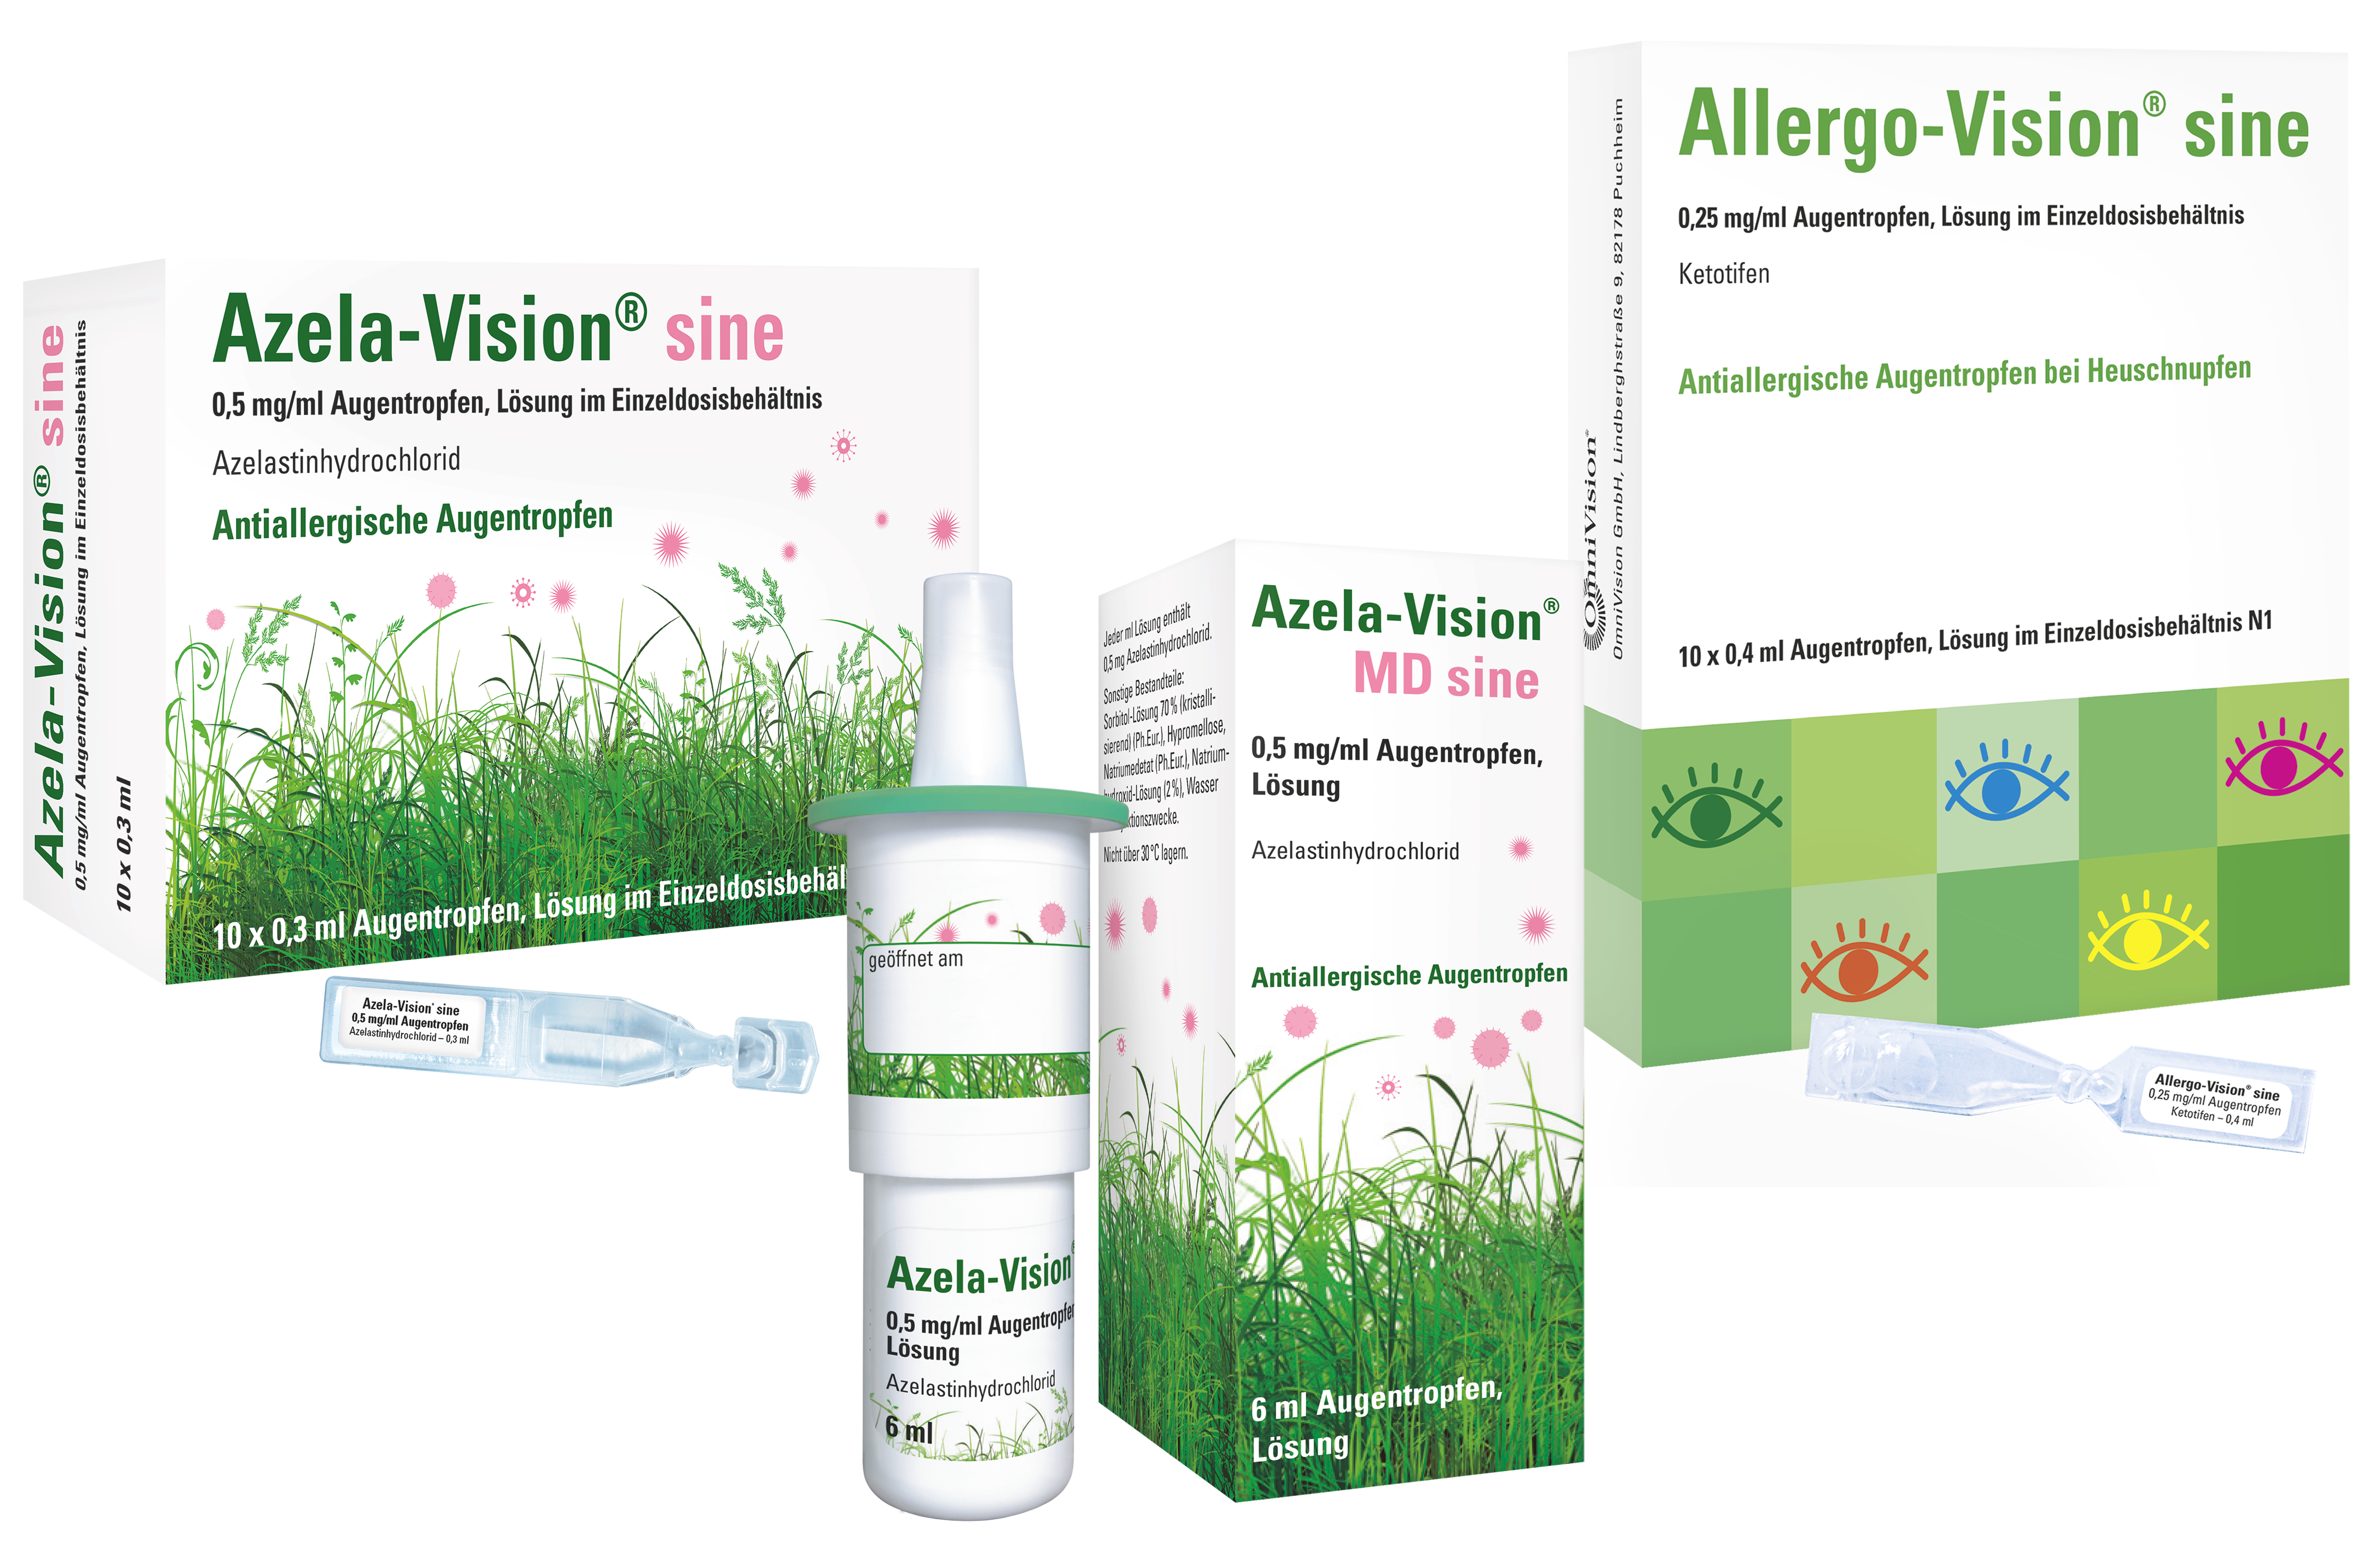 Allergo-Vision<sup>®</sup> & Azela-Vision<sup>®</sup>